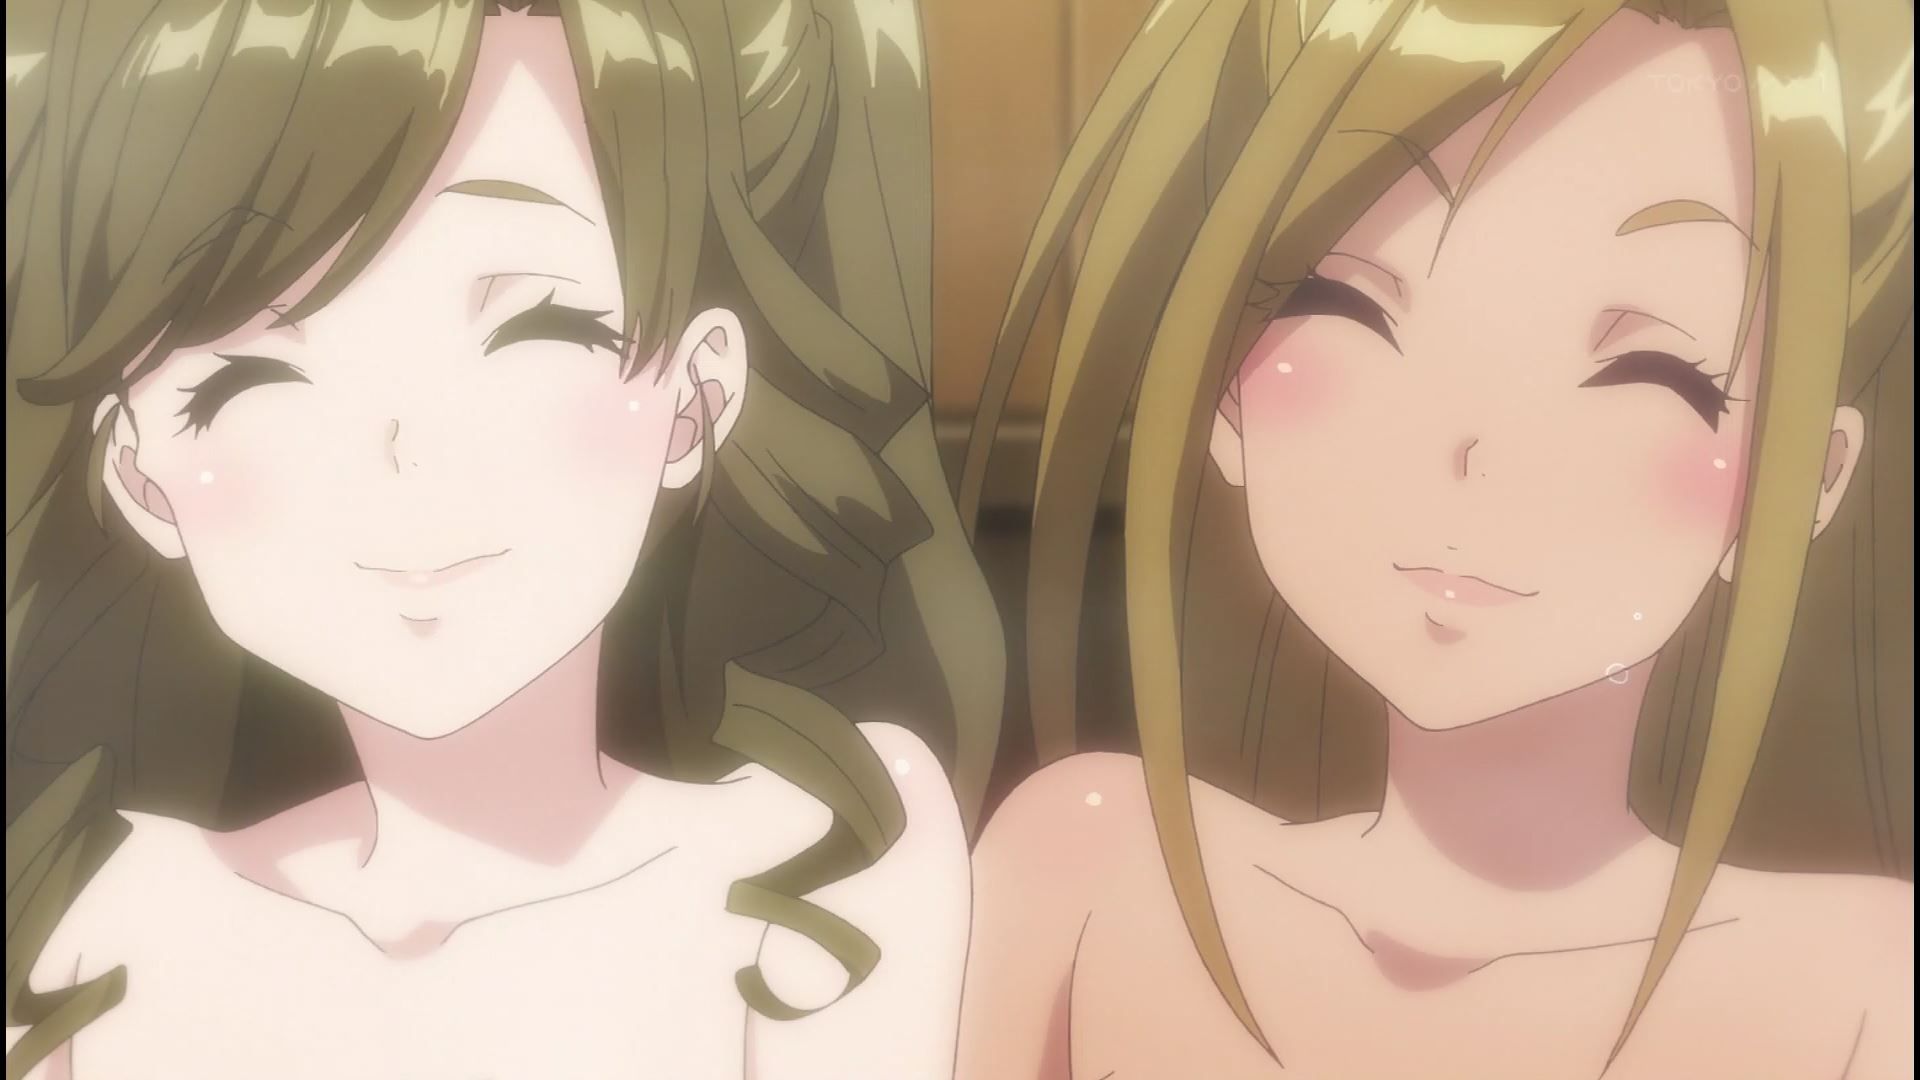 Anime [Kandagawa JETGIRLS] 8 episodes of girls erotic round-view bath bathing scene! 26